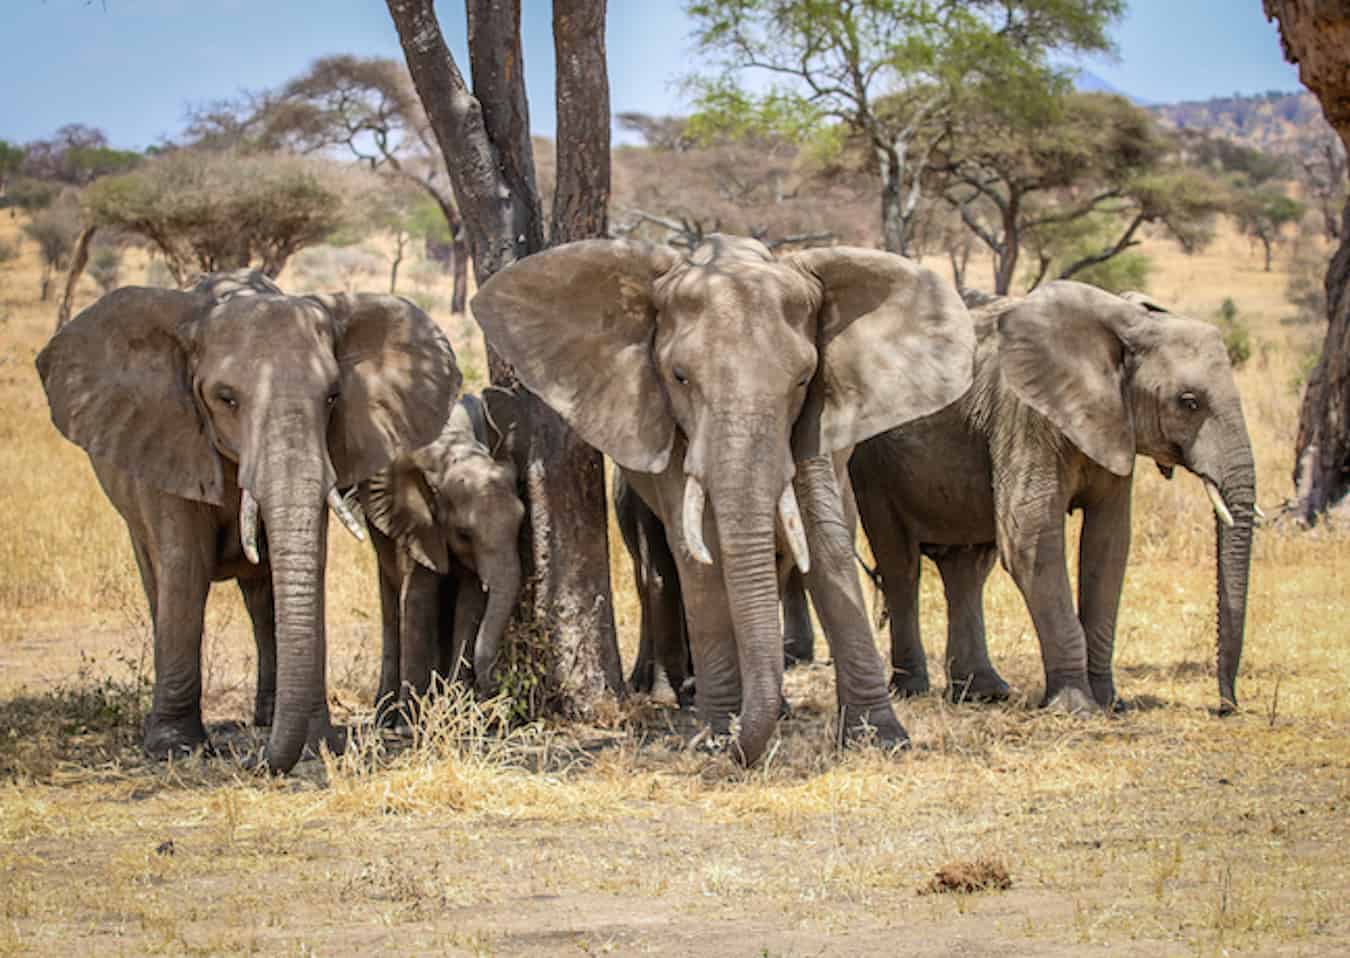 Elephants in Tarangire National Park, Tanzania